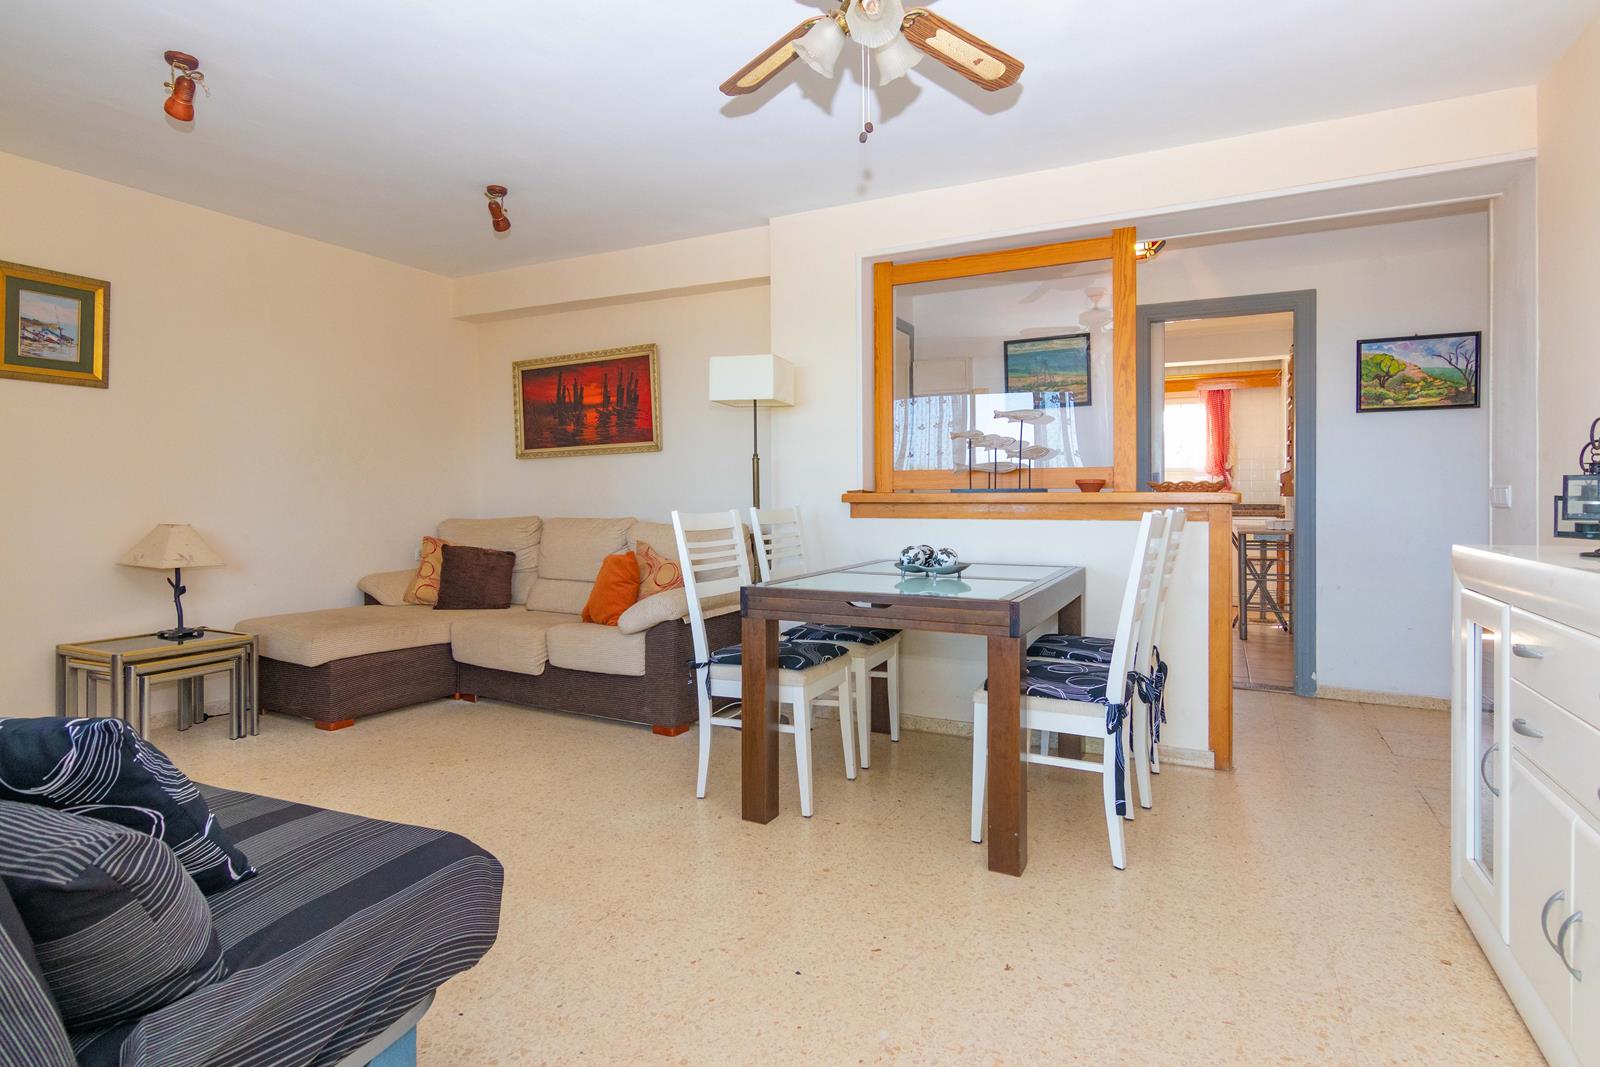 Apartamento de playa con 3 dormitorios vistas al mar en venta en Denia